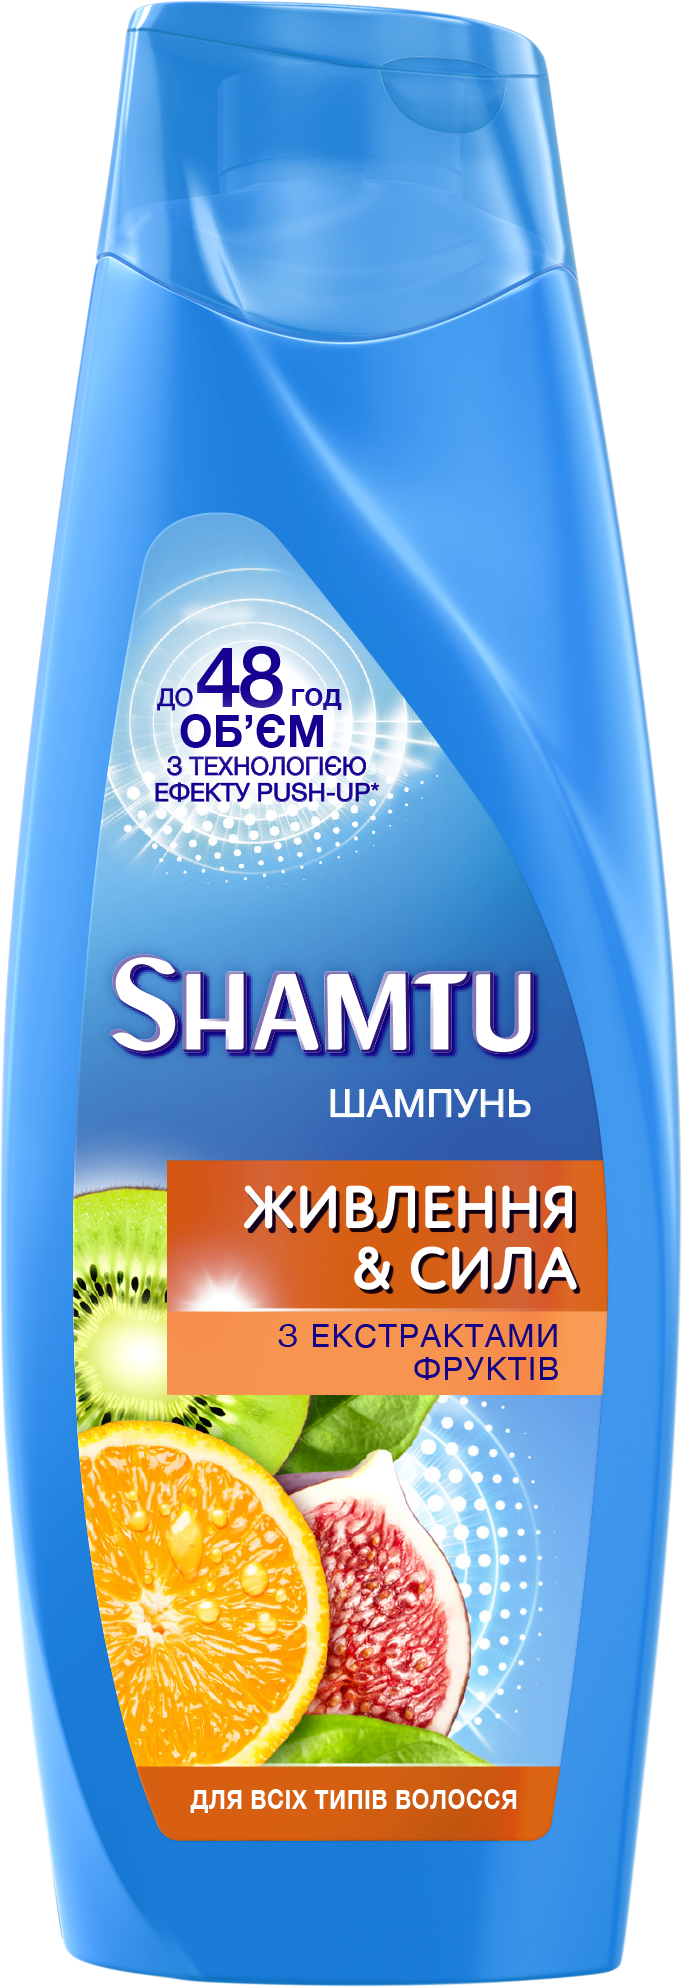 Шампунь Shamtu Питание и Сила, c экстрактами фруктов, для всех типов волос, 200 мл - фото 1